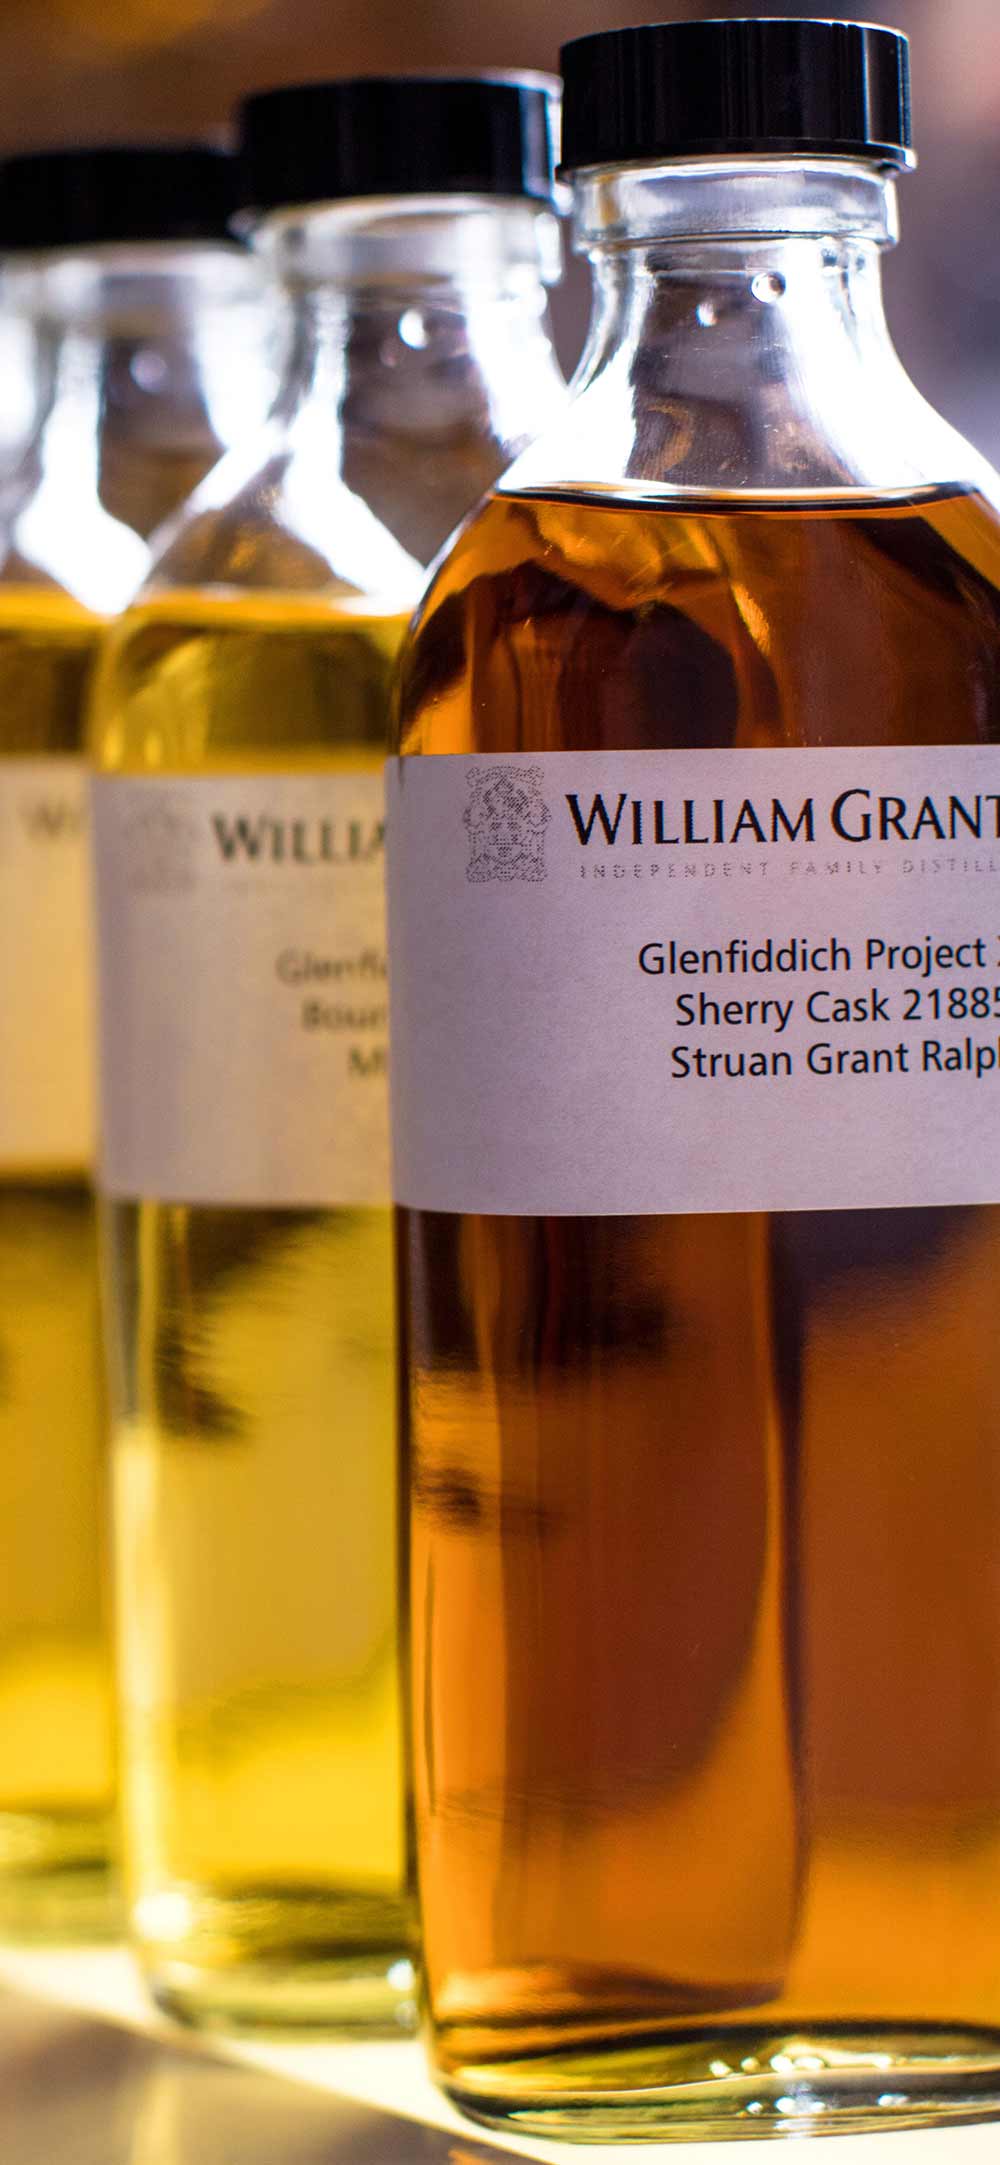 William Grants & Sons Whisky Bottles